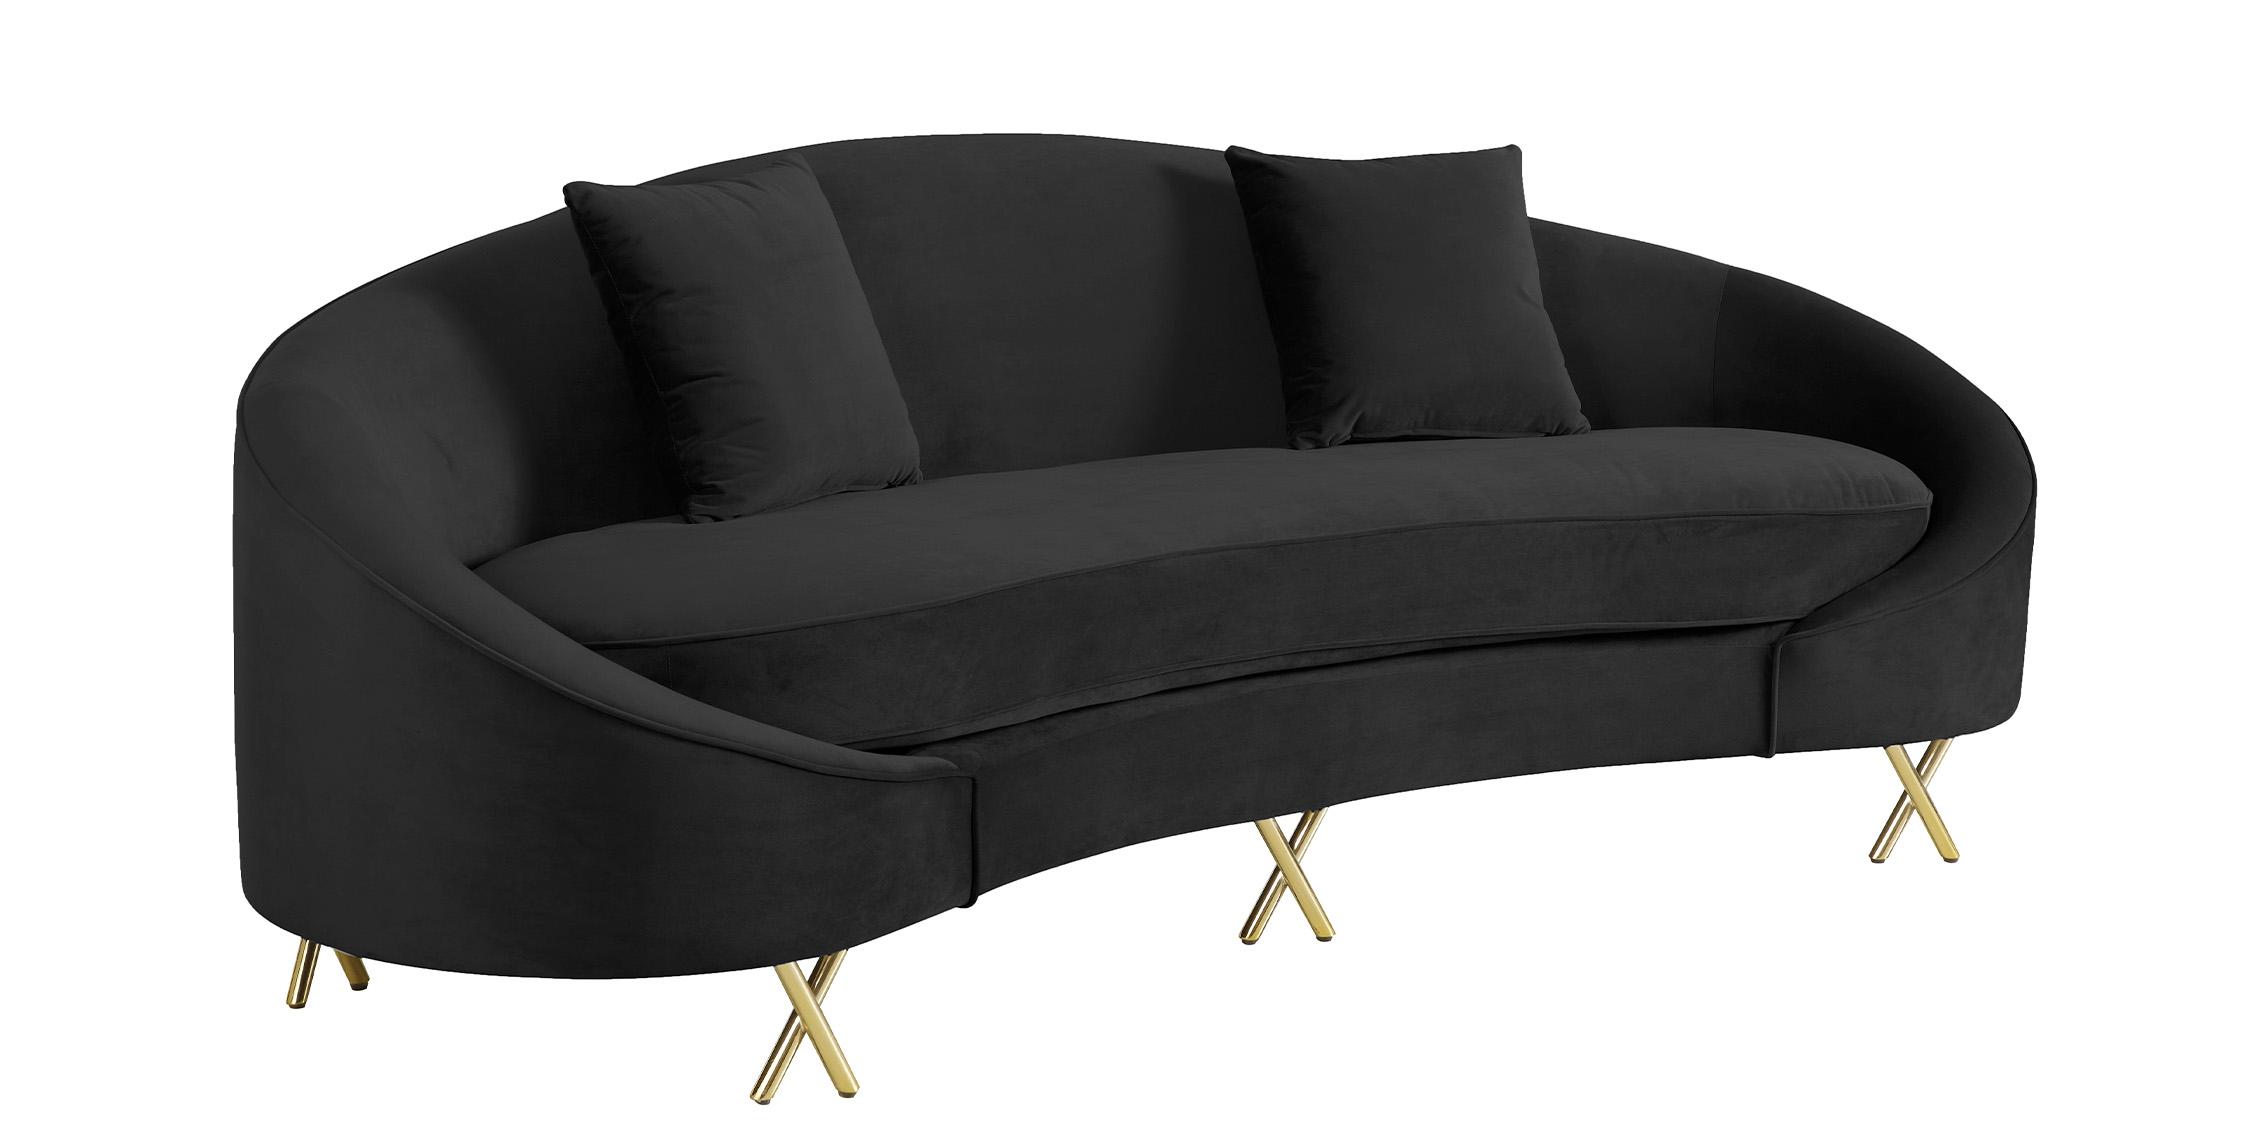 

    
Glam Black Velvet Sofa Set 3P SERPENTINE 679Black-S Meridian Contemporary Modern
